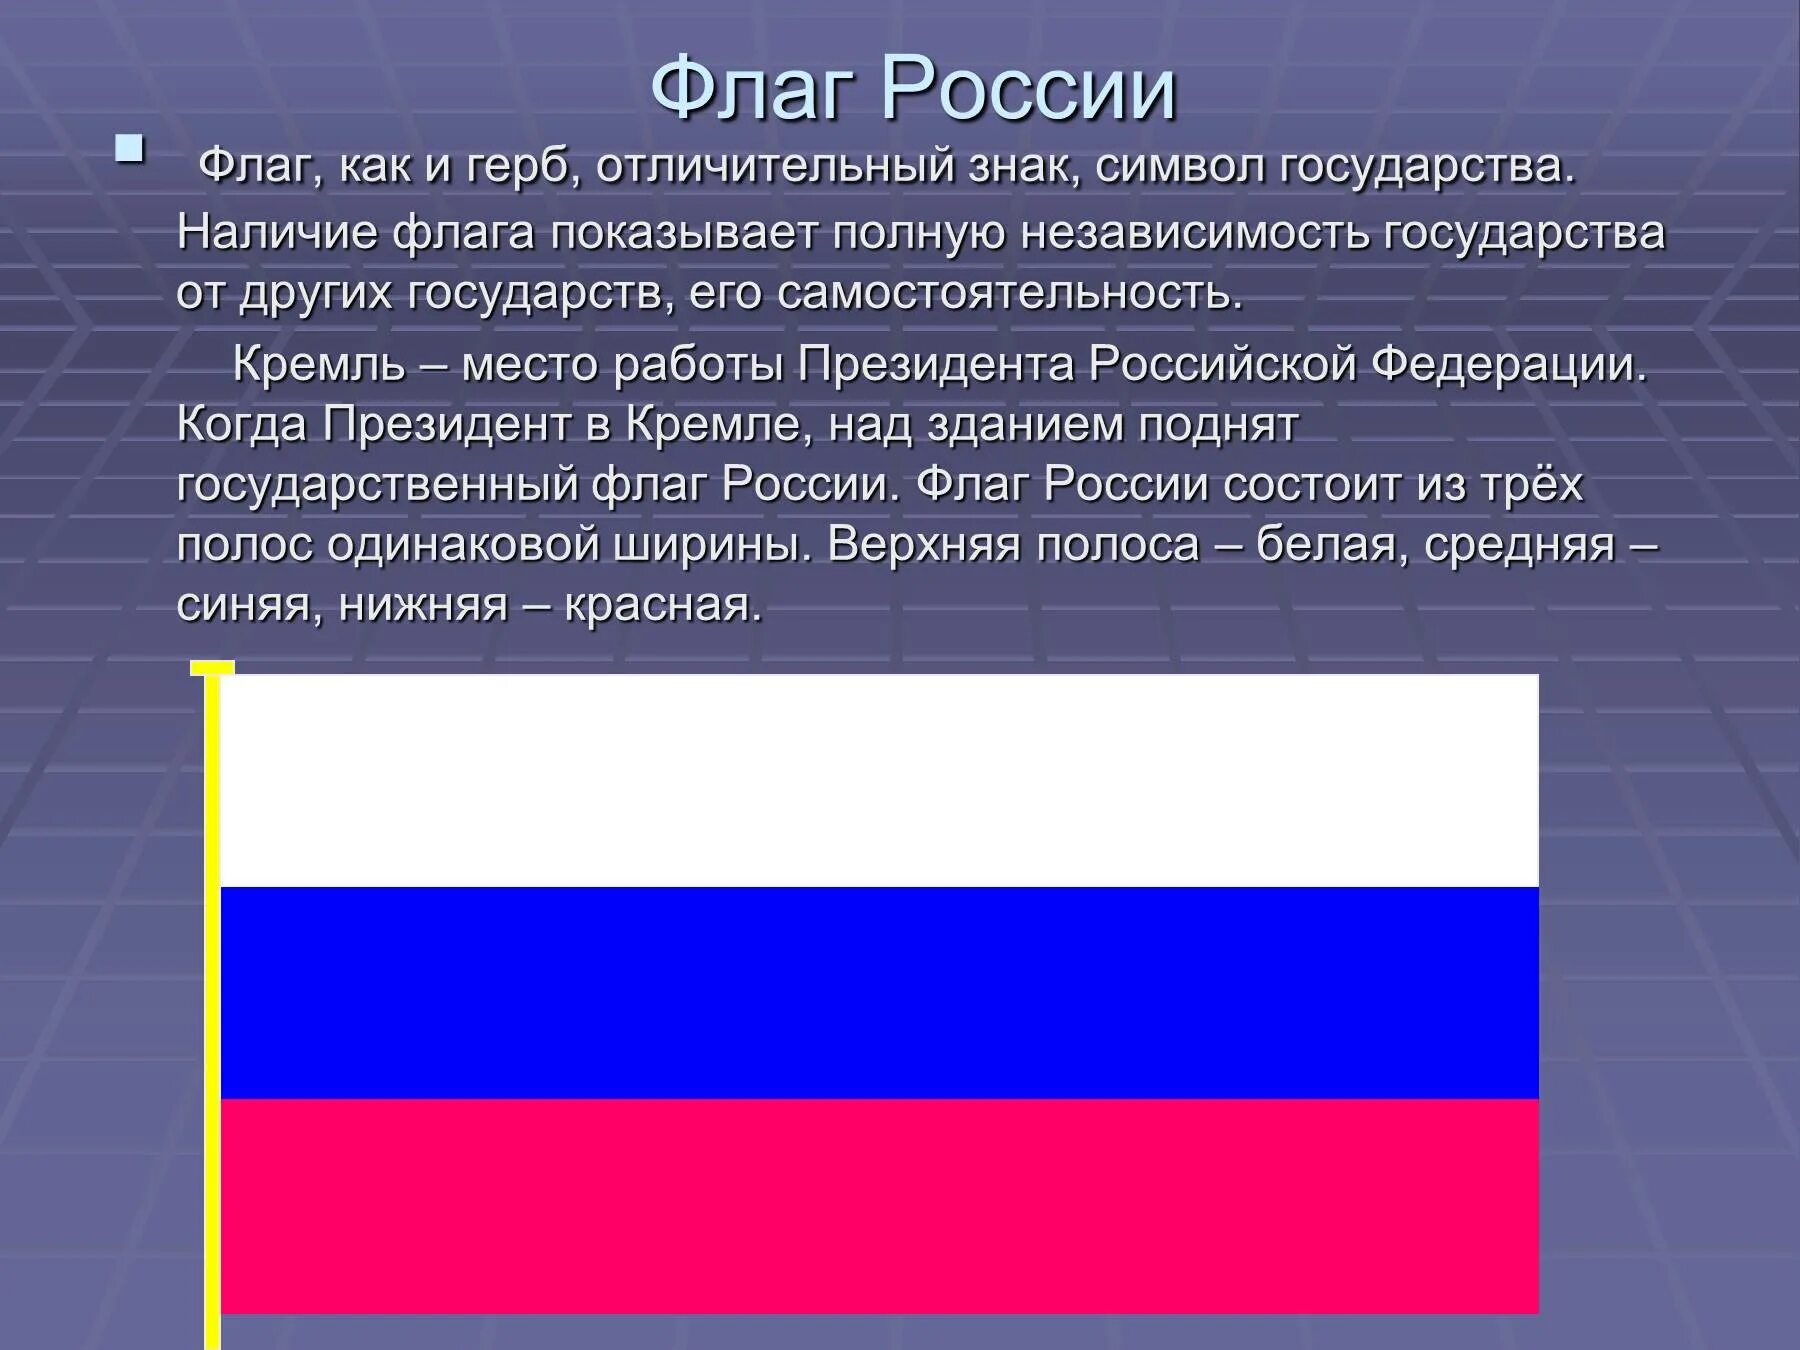 Как будет флаг россии